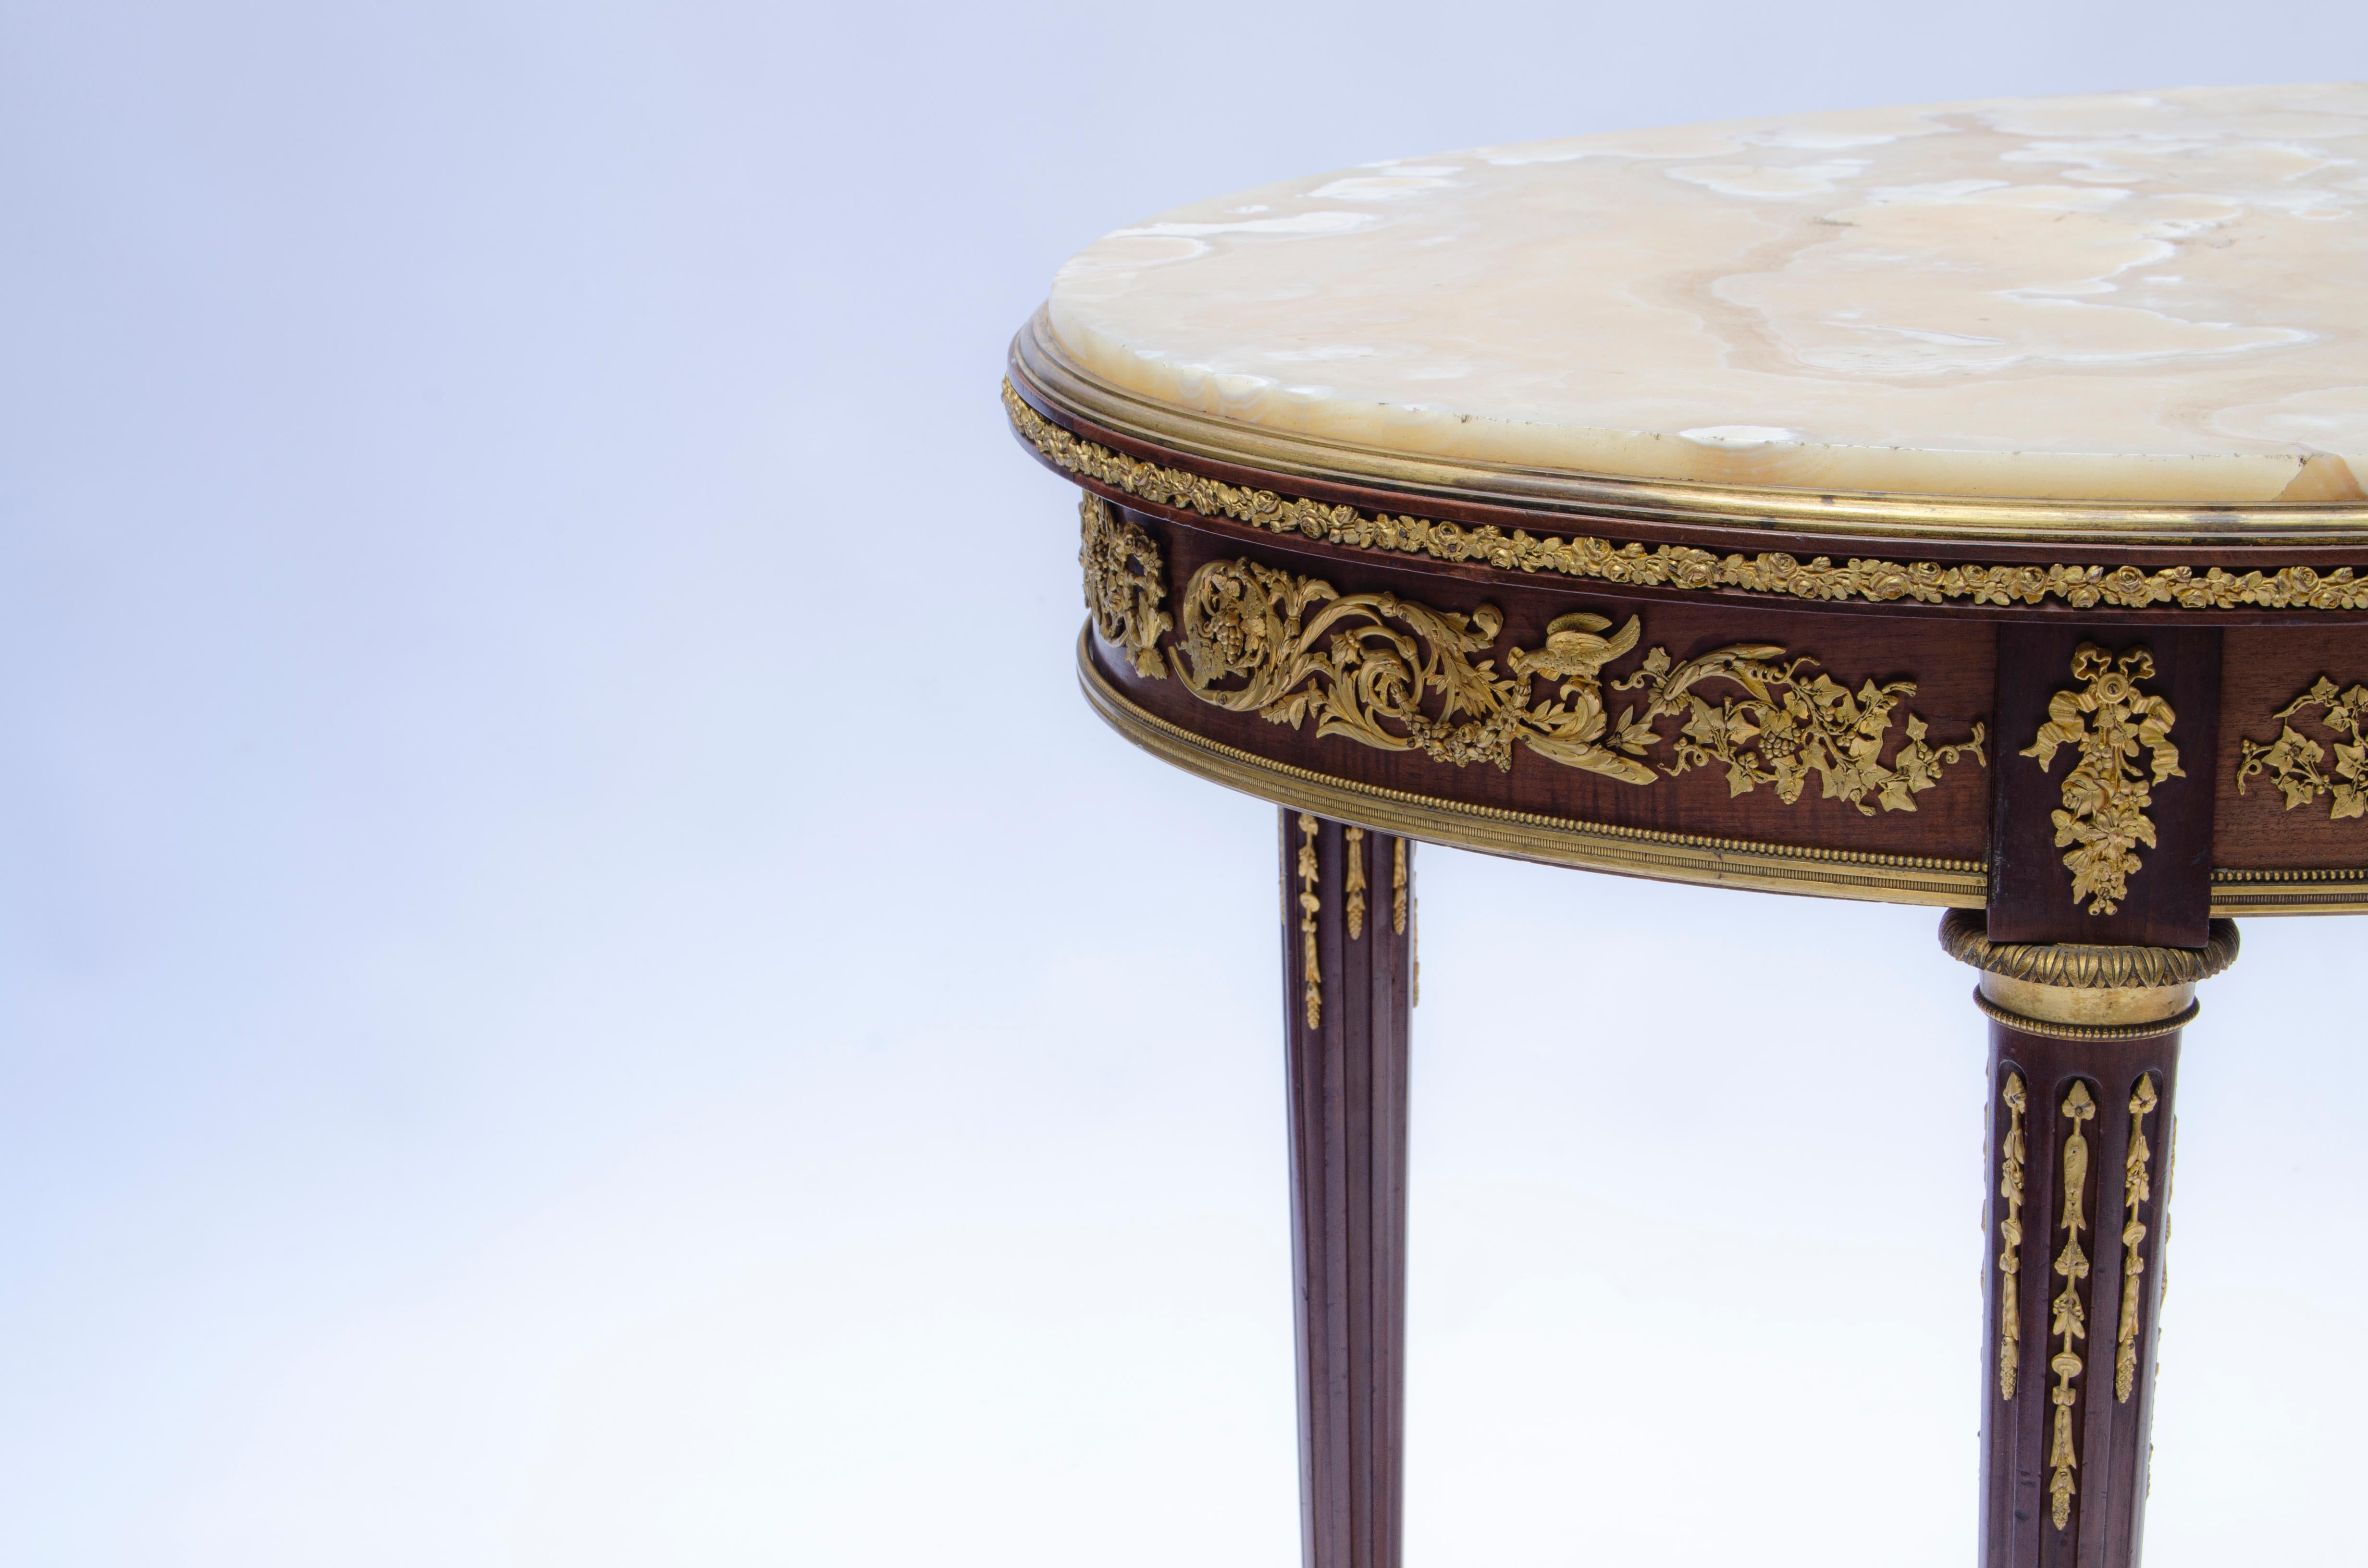 Ovaler französischer Beistelltisch im Louis XVI-Stil, aus Mahagoniholz und vergoldeter Bronze (Ormolu), montiert auf Guéridon und Marmorplatte. In seinem Design können wir erkennen, dass er oben mit Bronzegirlanden umgeben ist. An den Beinen setzen